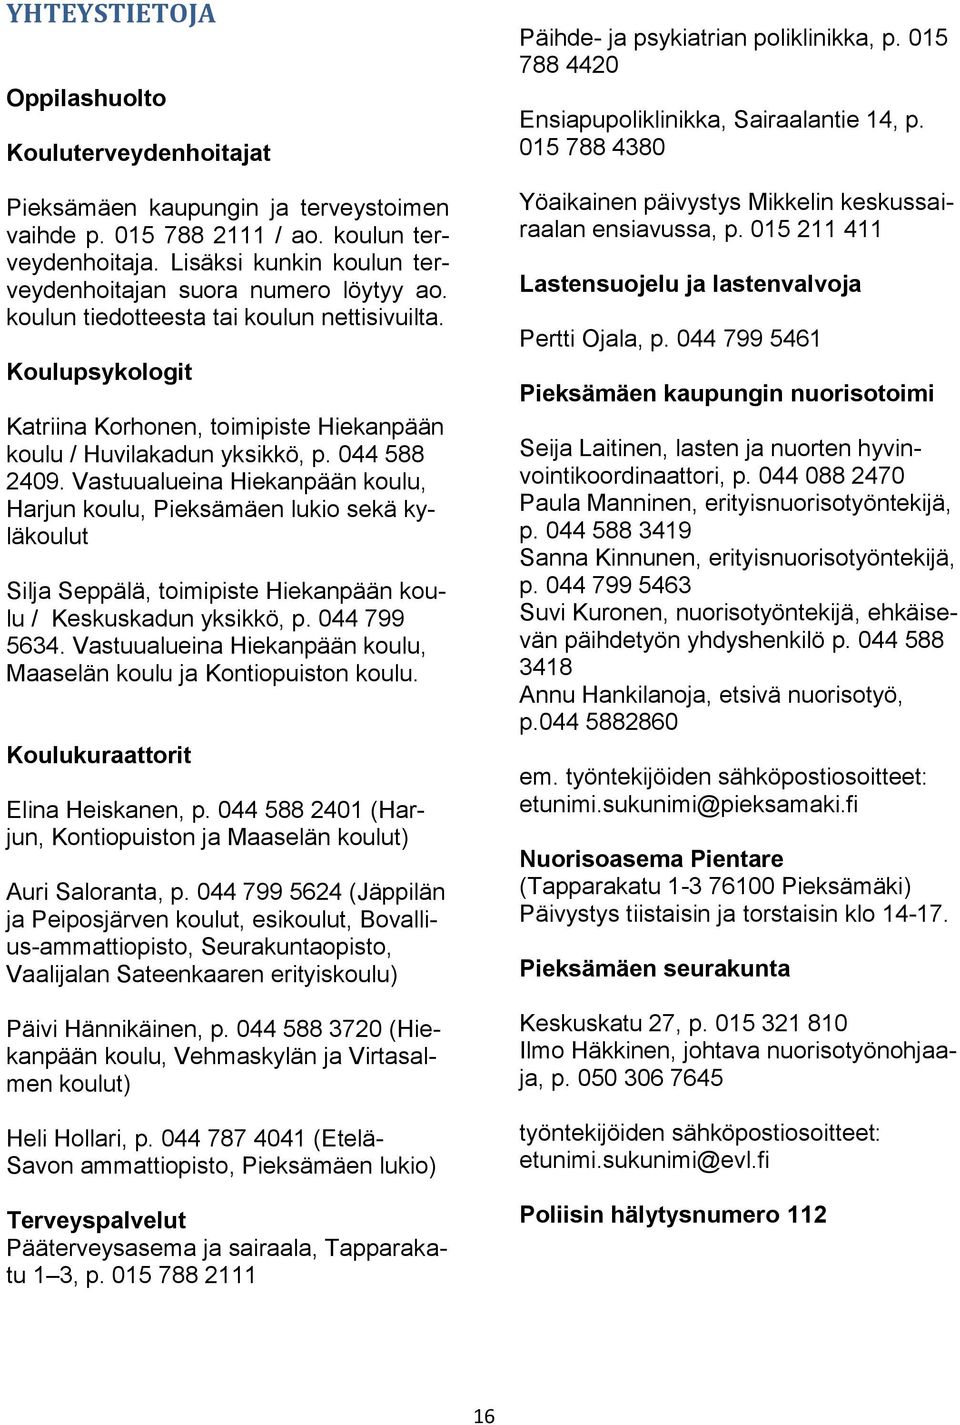 044 588 2409. Vastuualueina Hiekanpään koulu, Harjun koulu, Pieksämäen lukio sekä kyläkoulut Silja Seppälä, toimipiste Hiekanpään koulu / Keskuskadun yksikkö, p. 044 799 5634.